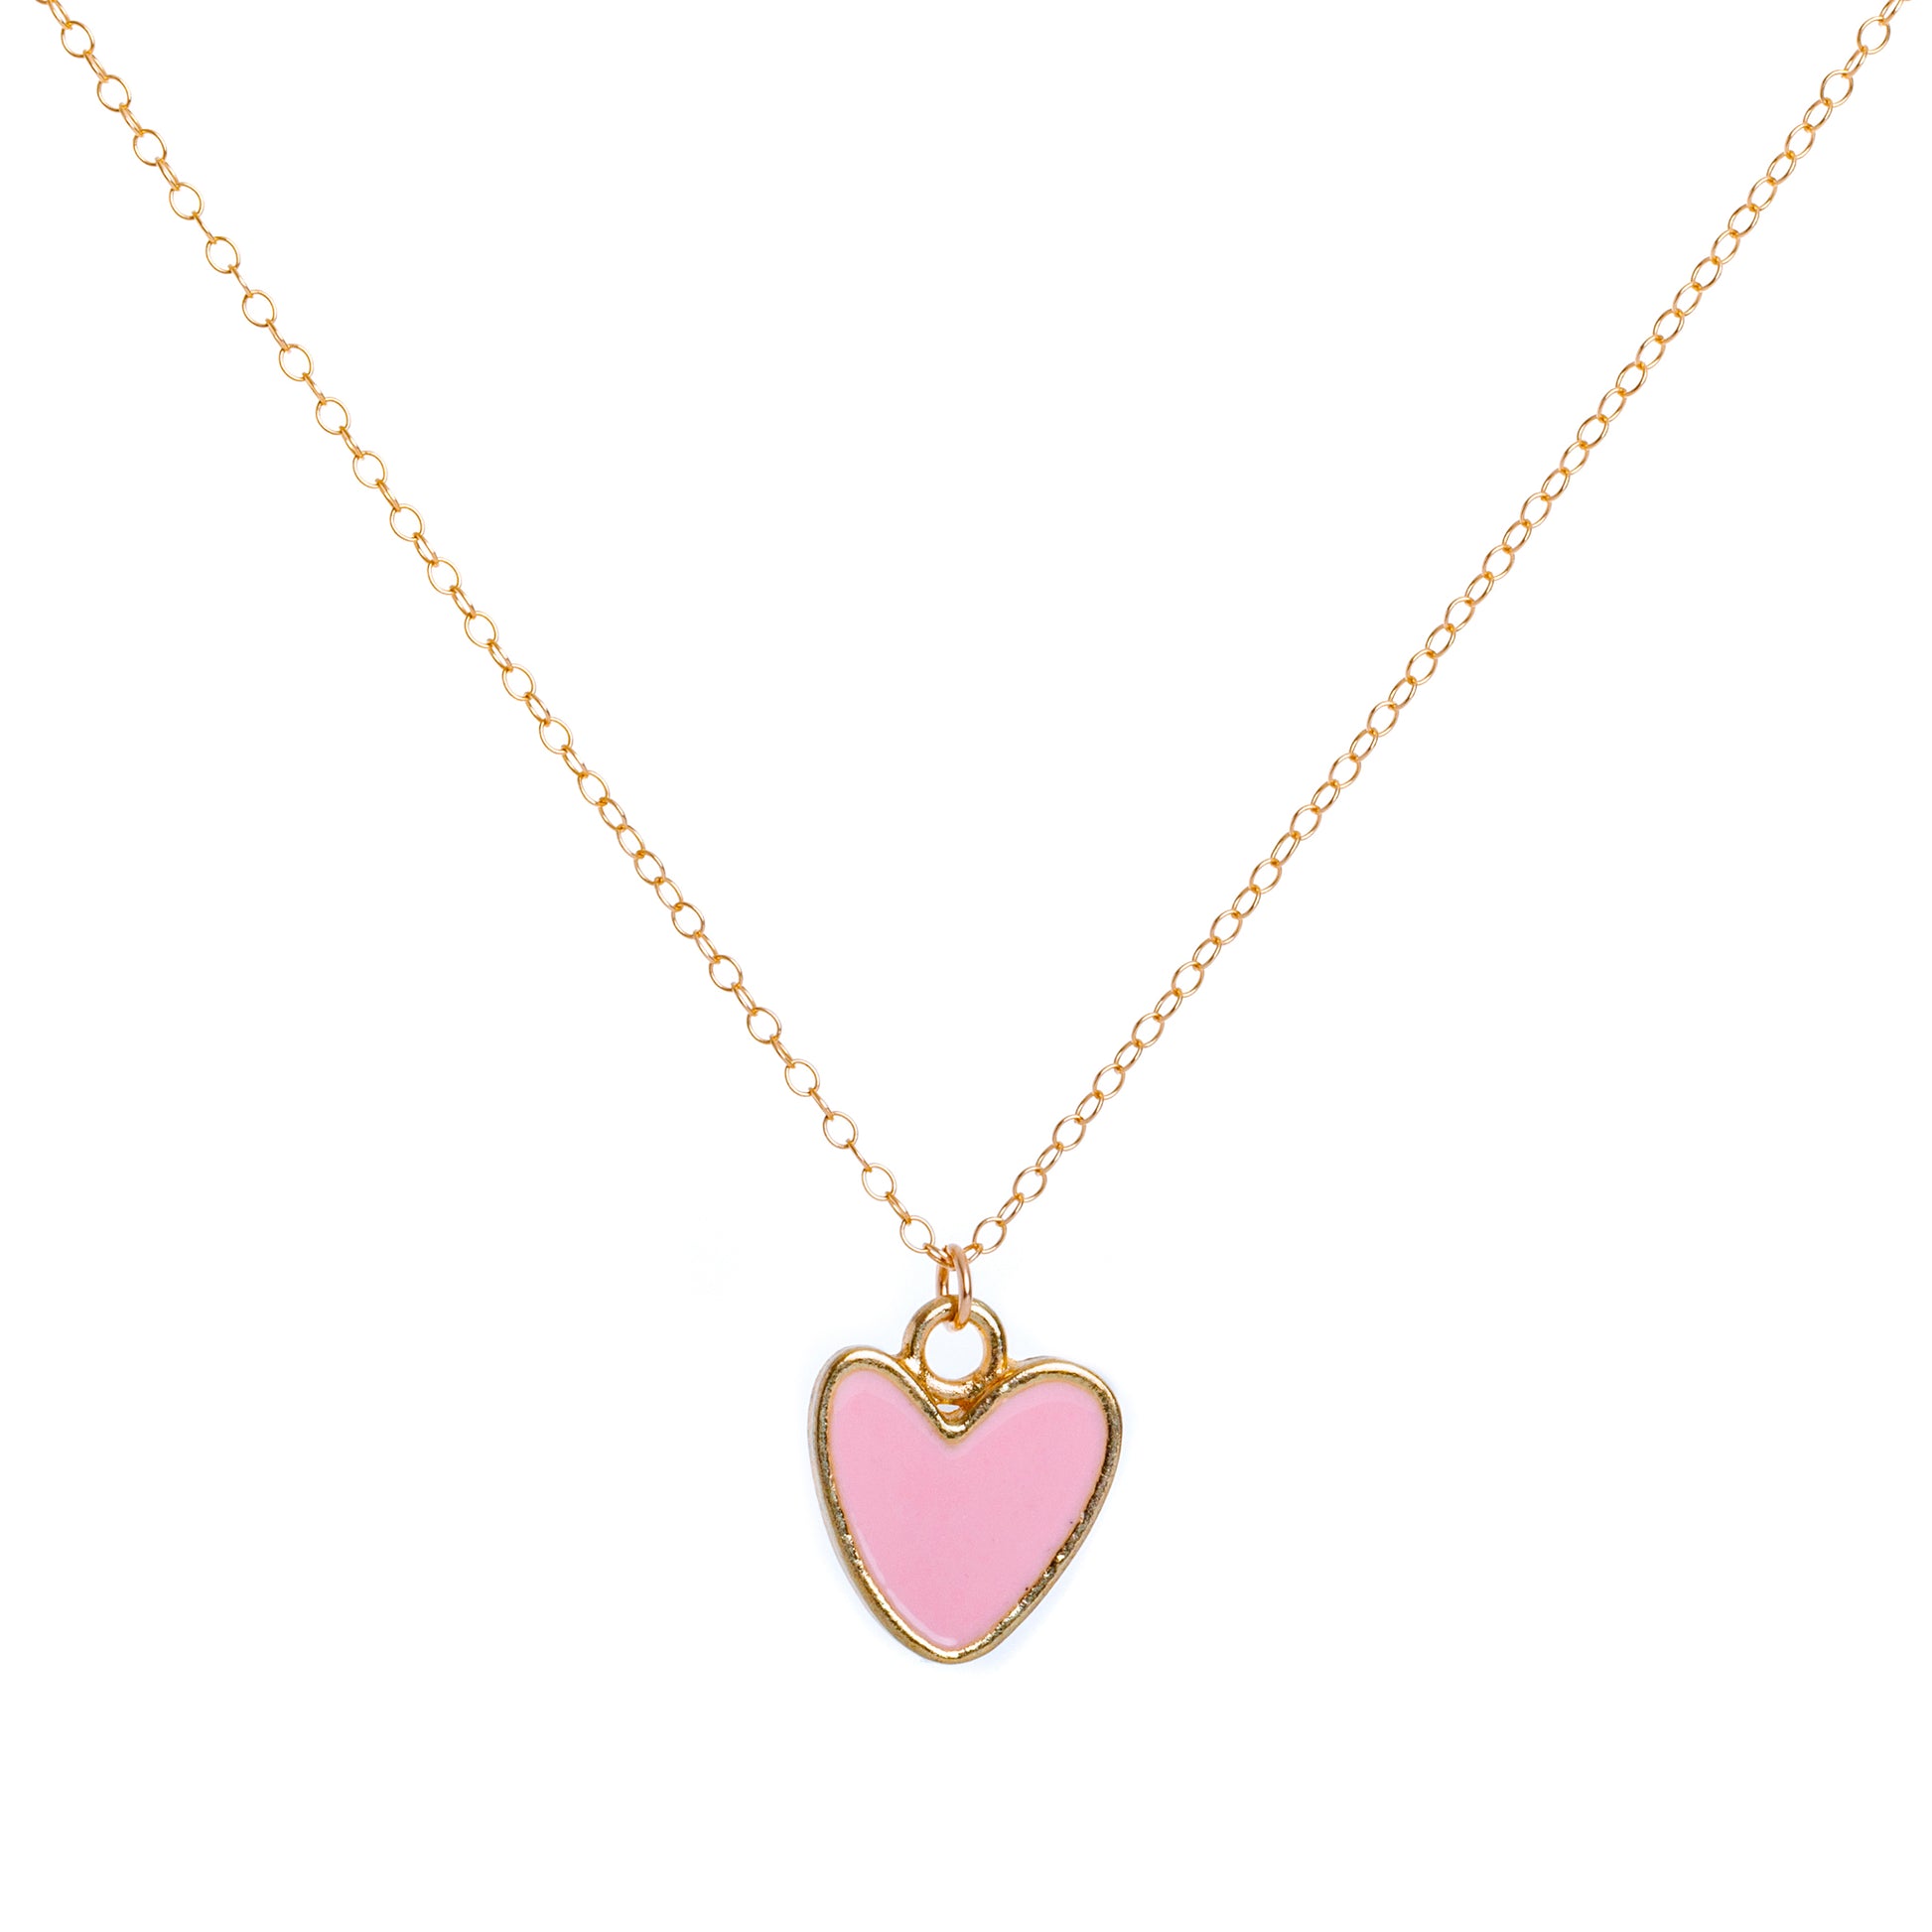 Gold Enamel Heart Necklace